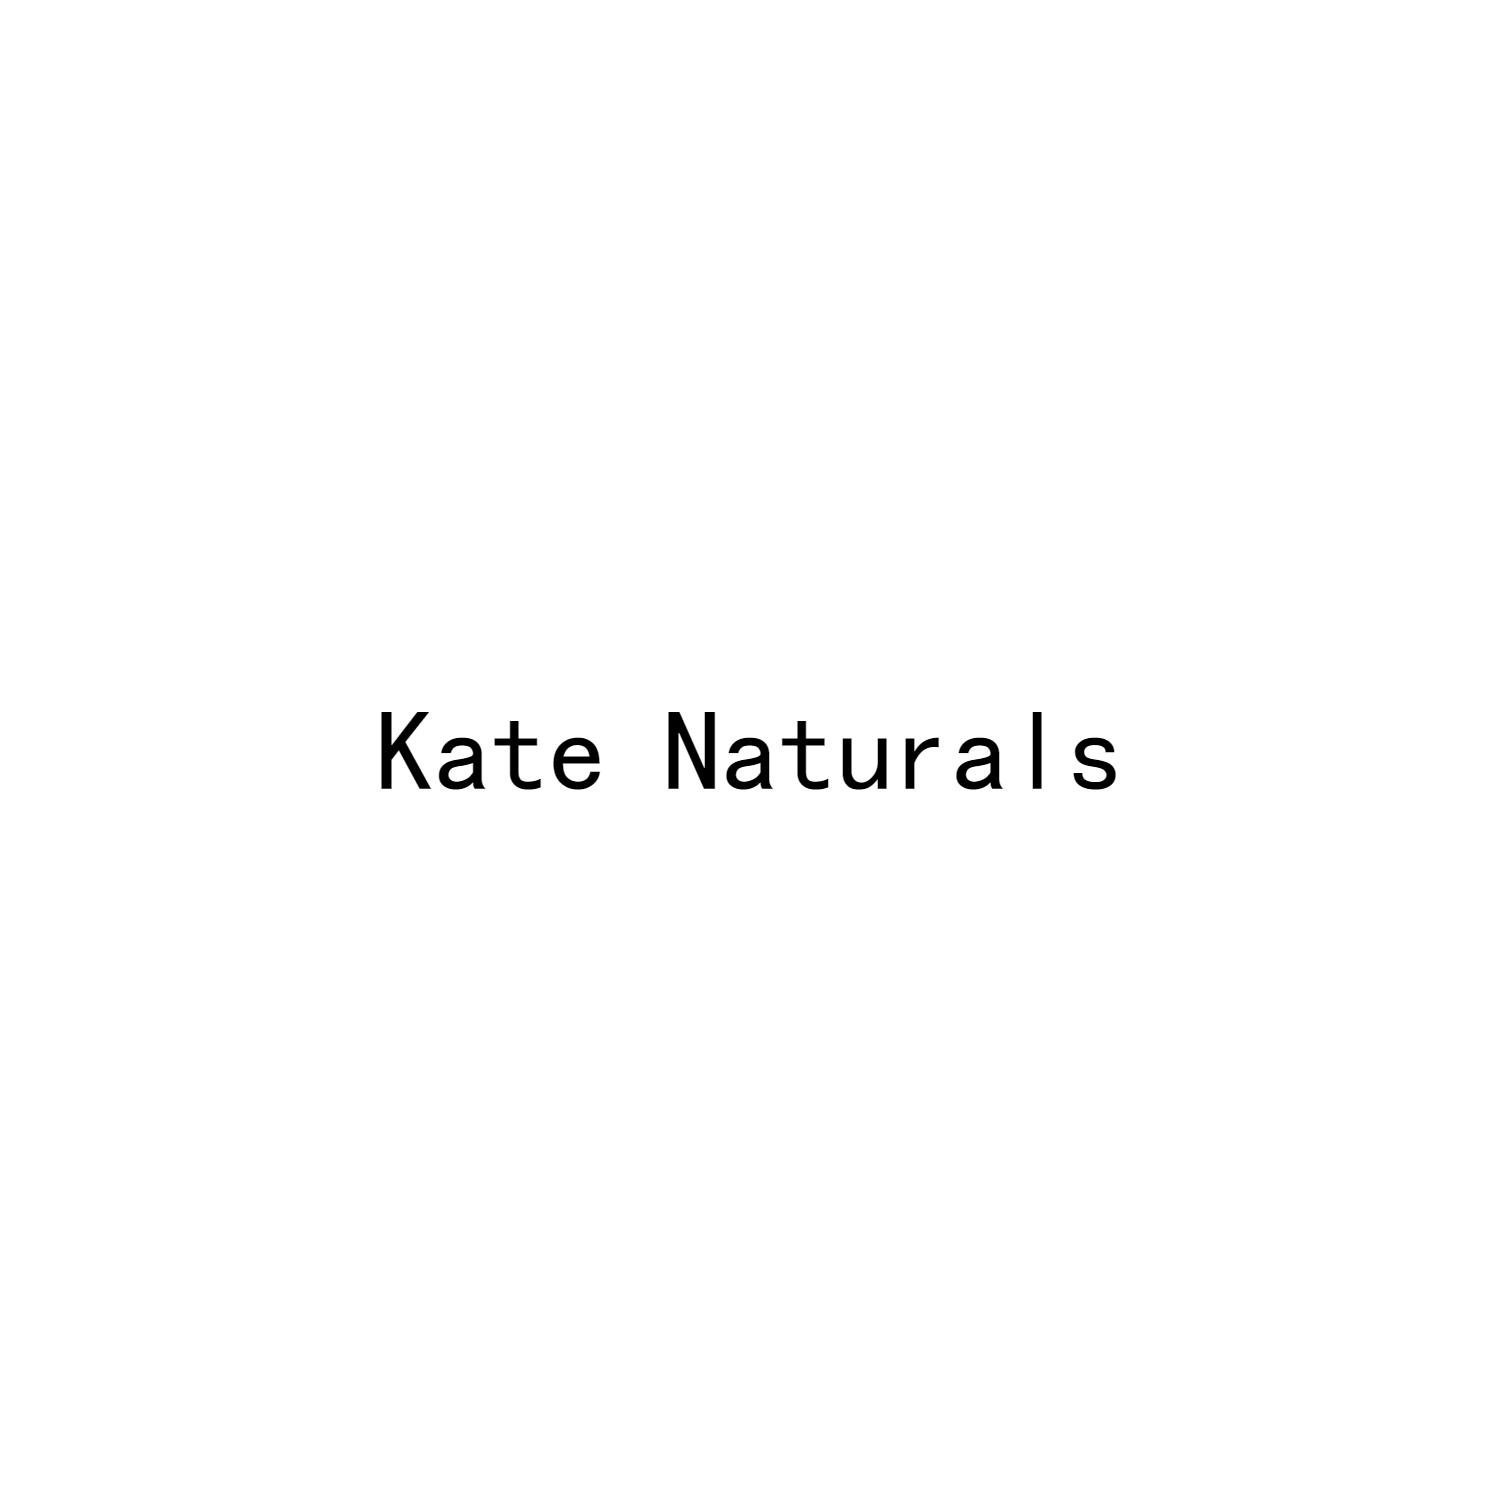 KATE NATURALS